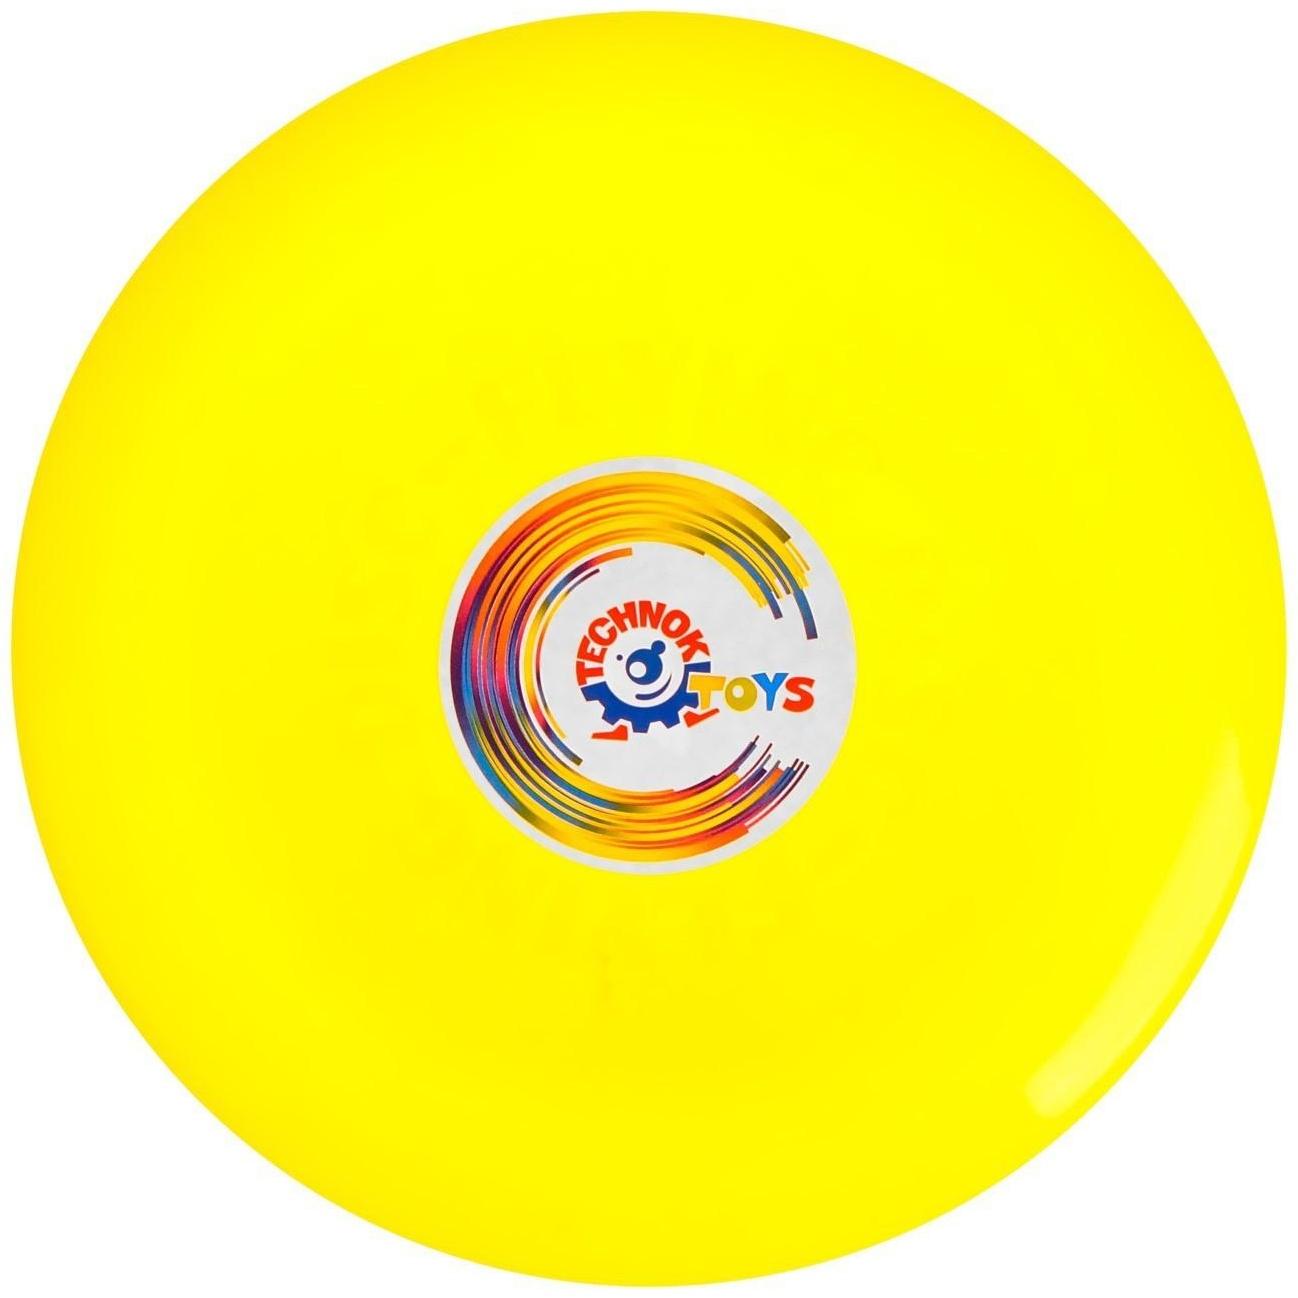 Летающая тарелка, 24 × 24 × 2,5 см, цвет жёлтый + мел в подарок